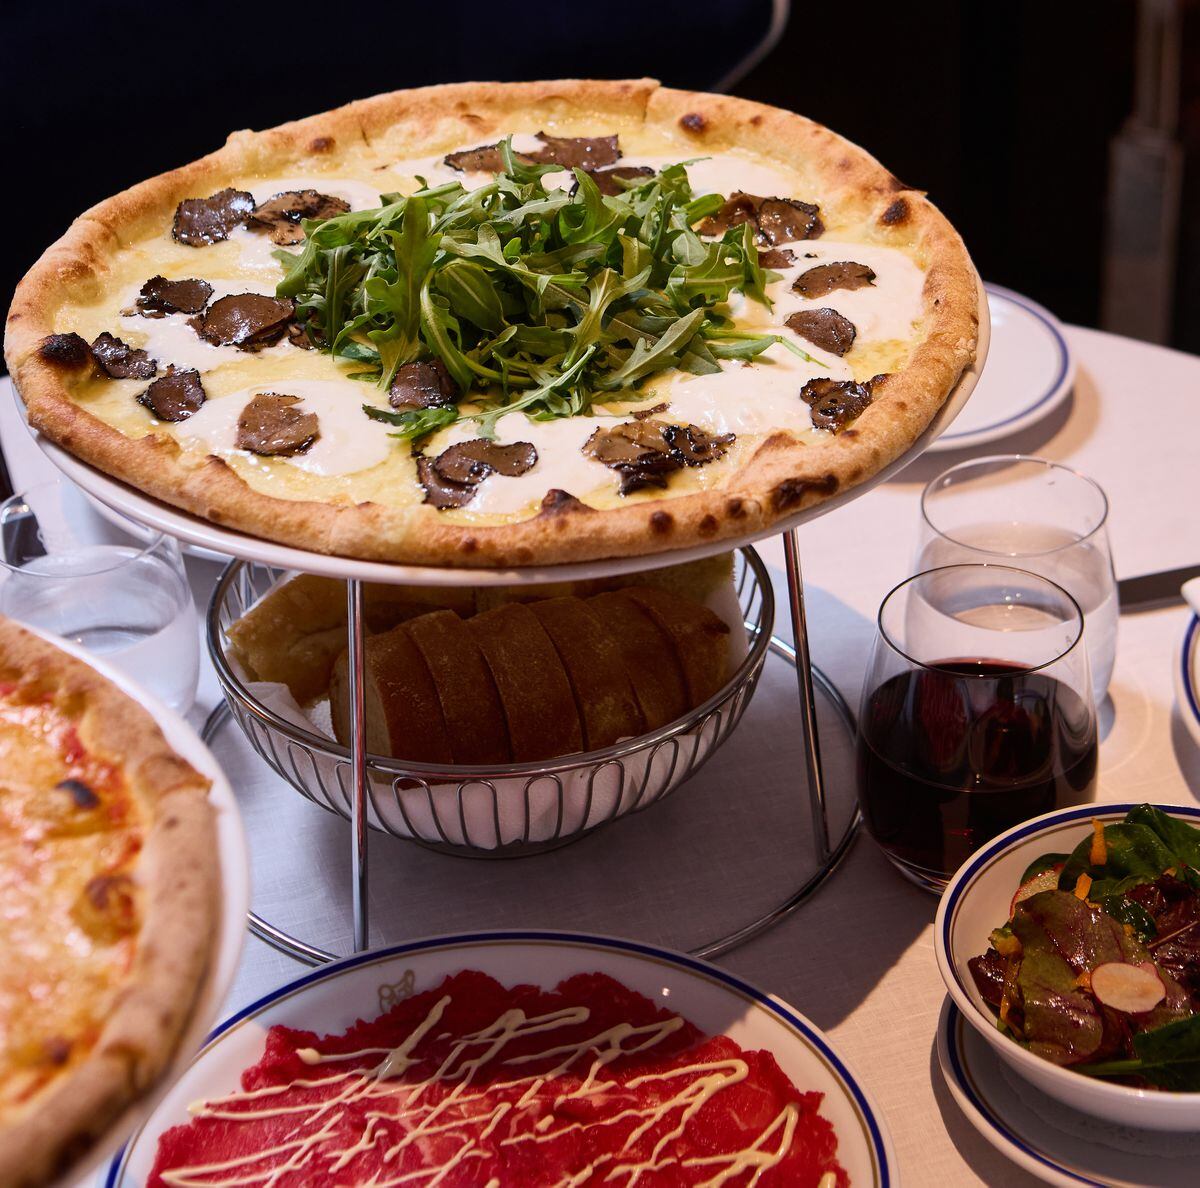 Cipriani power a Marbella: pizza burrata, rucola e tartufo nero a 75 euro?  |  Gastronomia: ricette, ristoranti e bevande